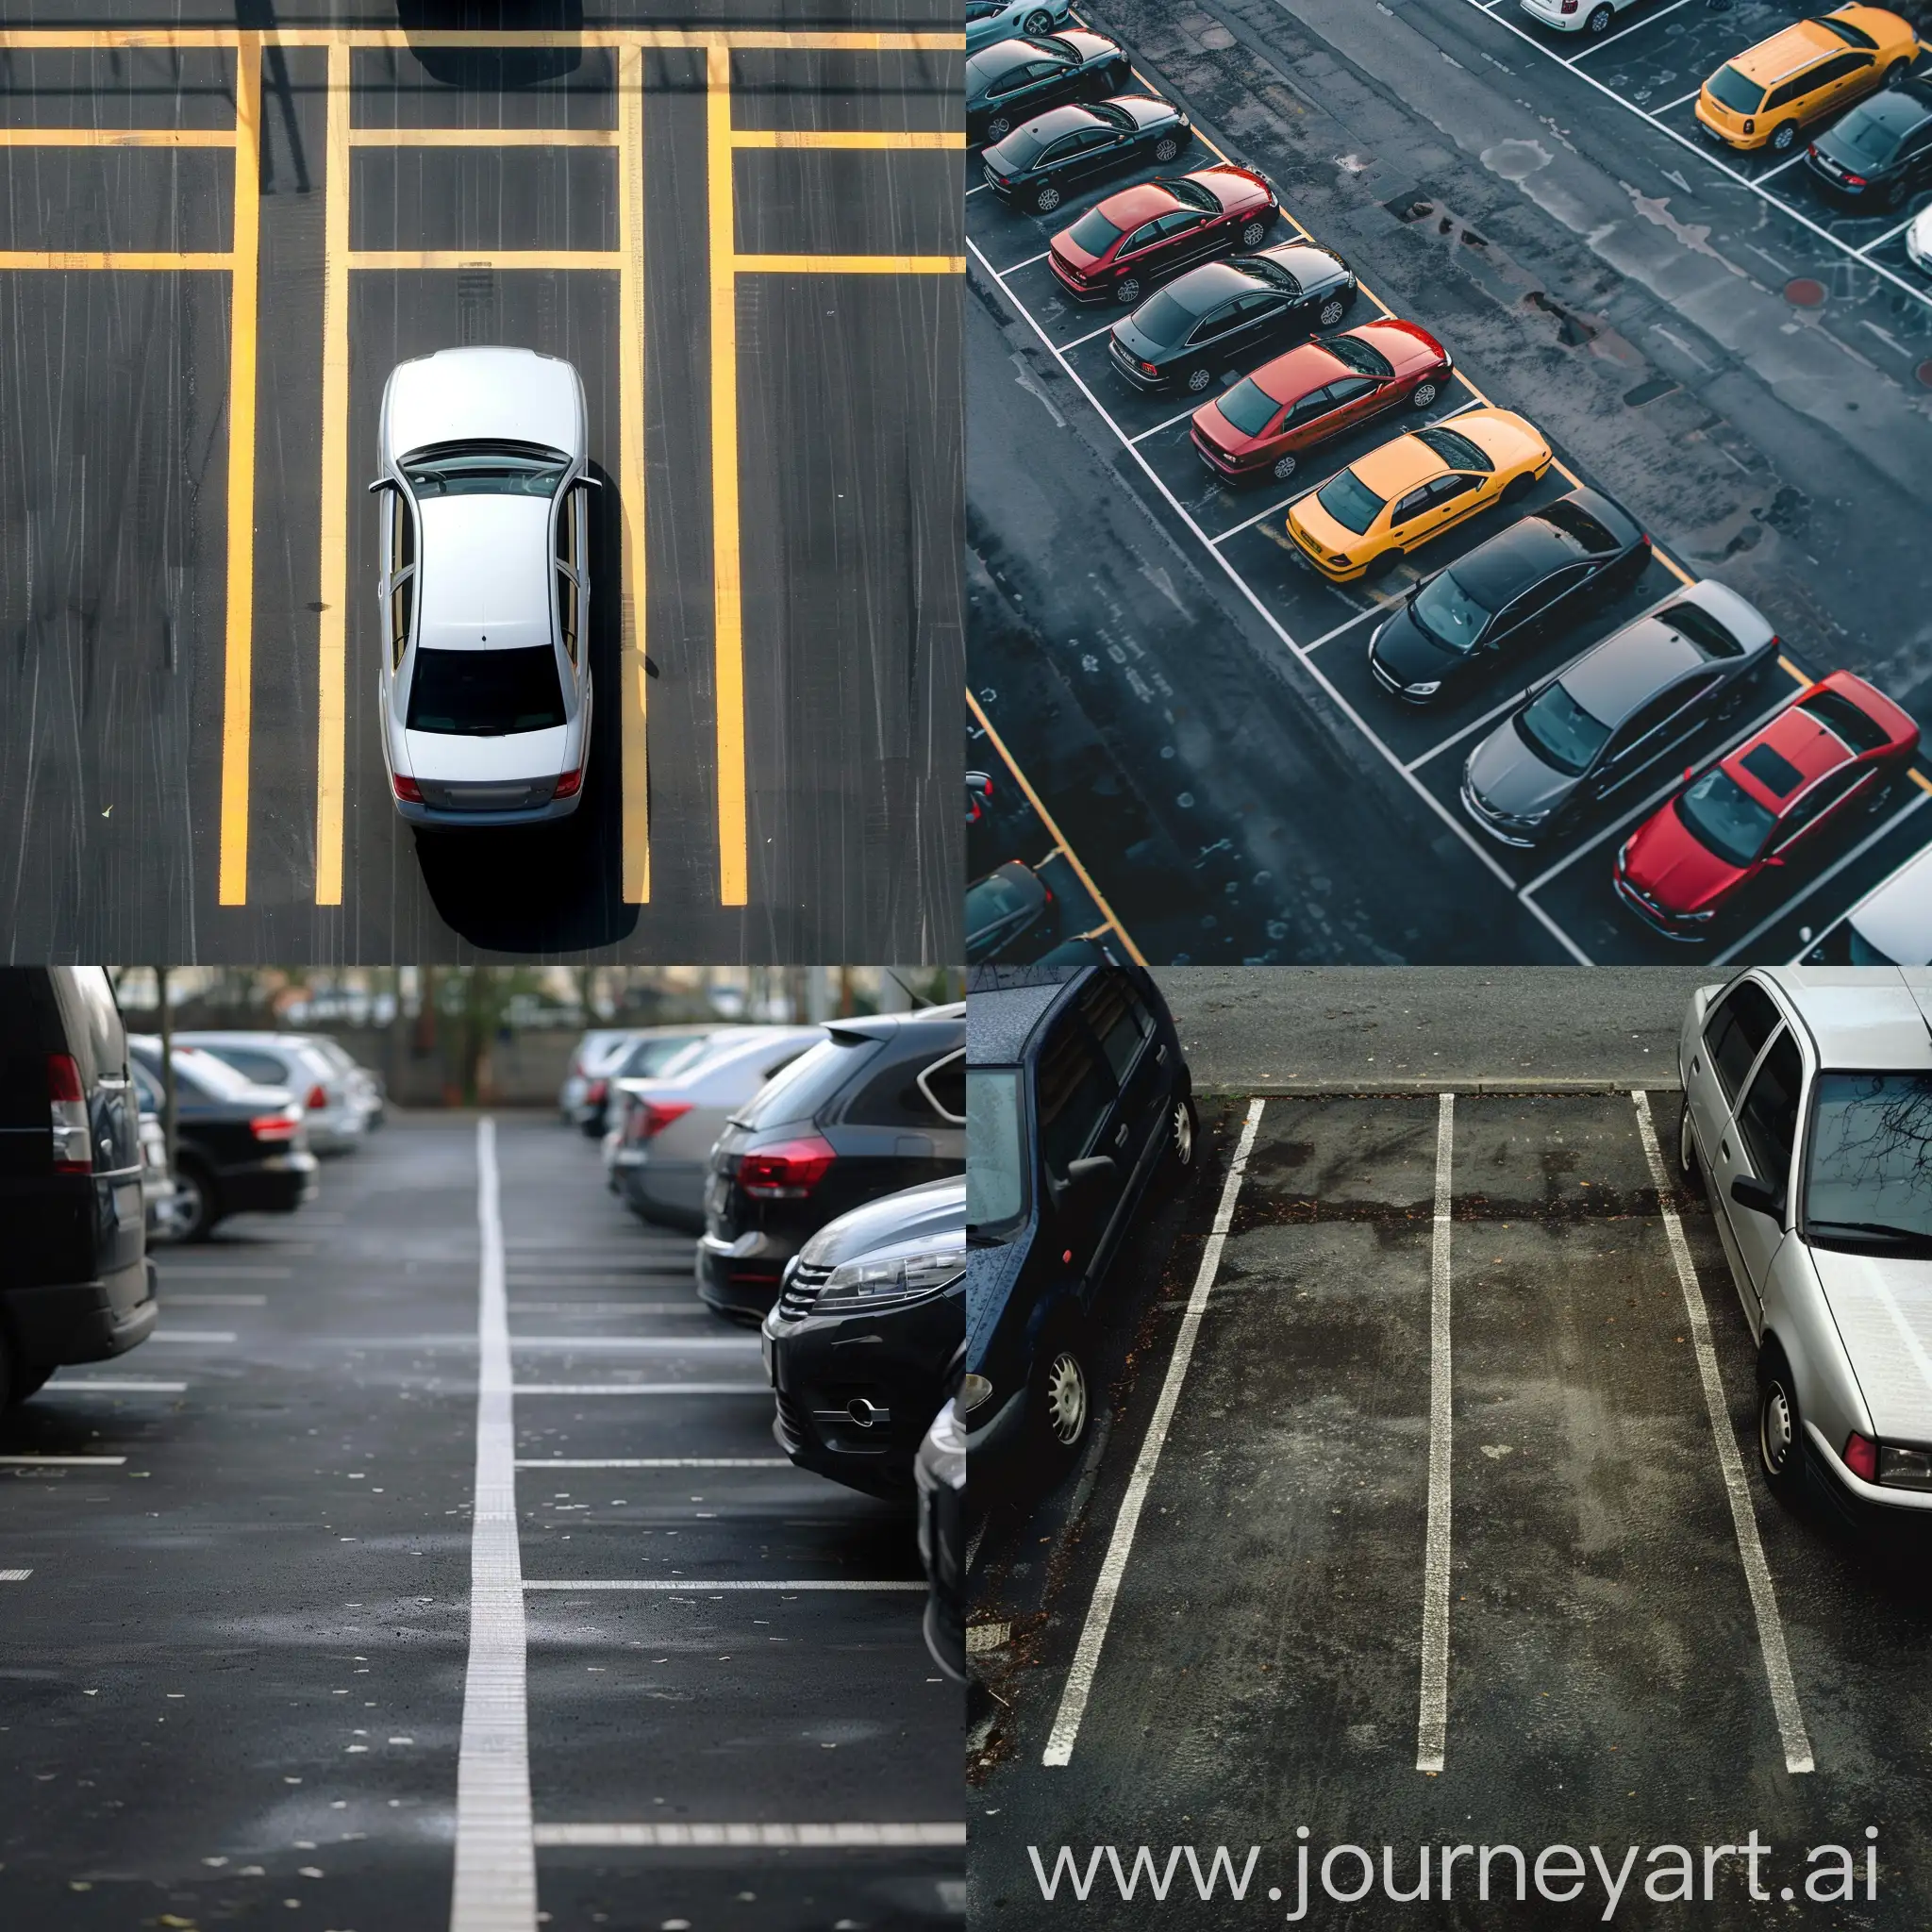 фото парковки без автомобилей с разных ракурсов крупным планом
